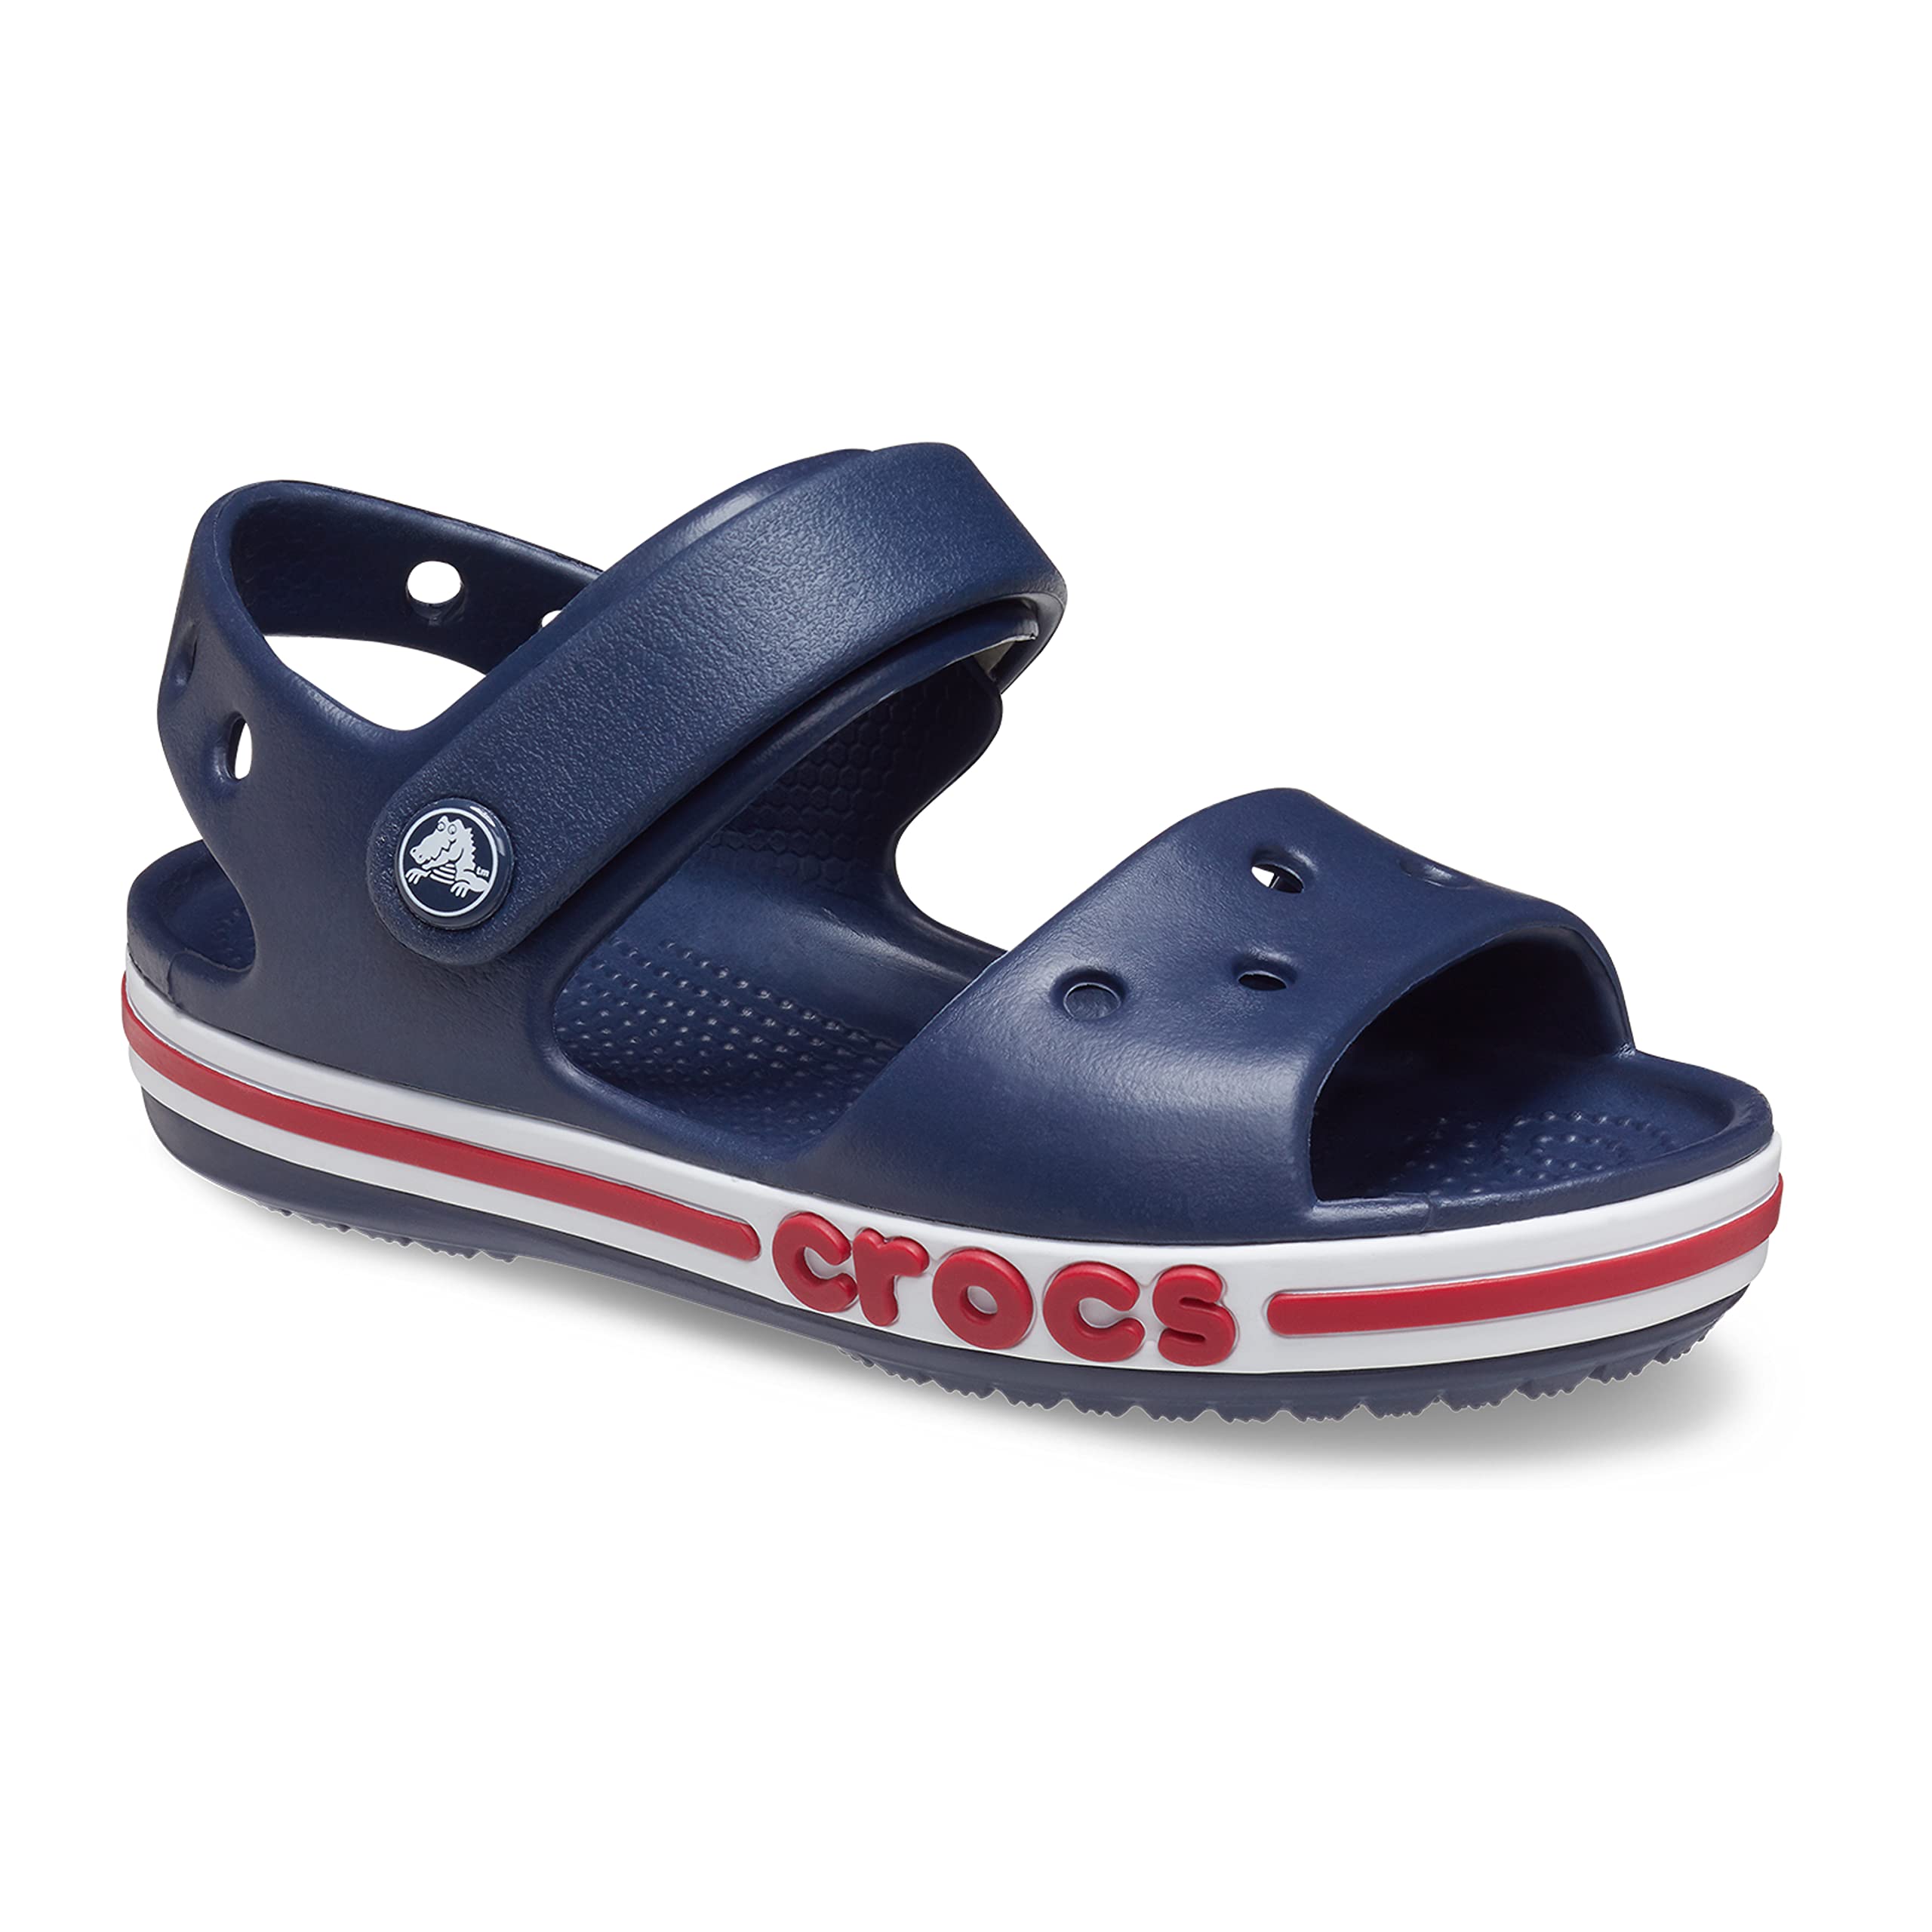 Crocs Unisex-Child Bayaband Sandal